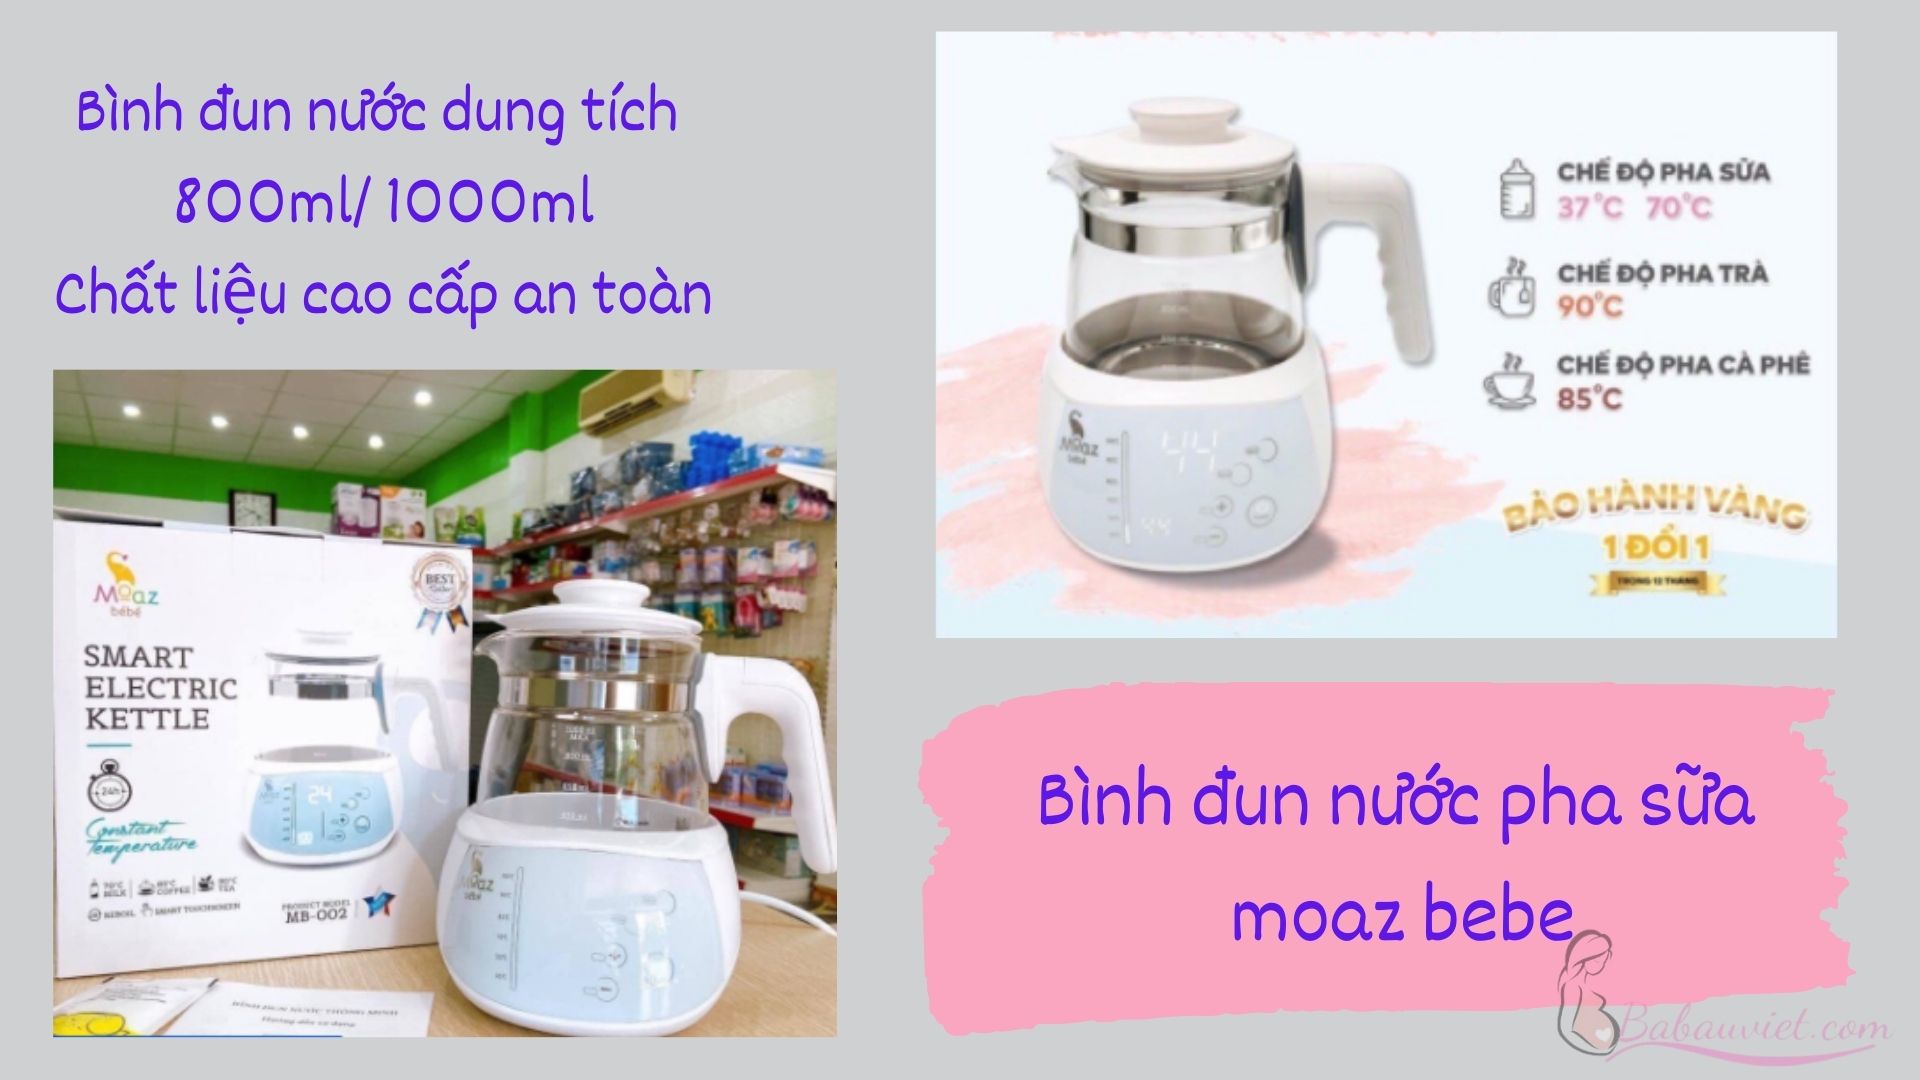 Top bình đun nước pha sữa cho bé tốt nhất: Bình đun nước pha sữa moaz bebe